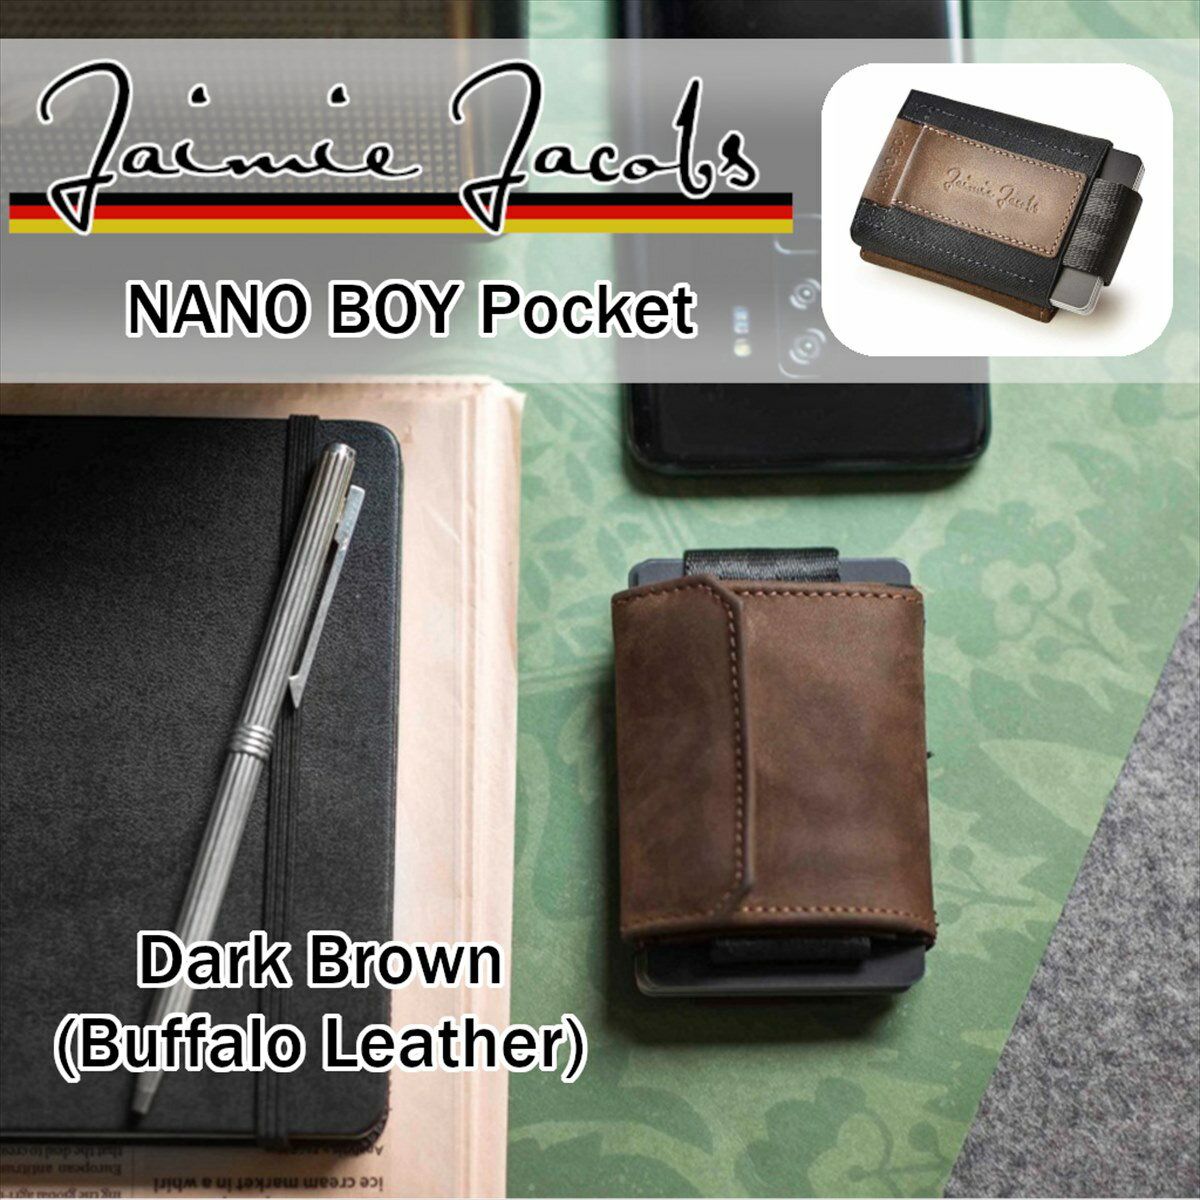 Jaimie Jacobs NANO BOY POCKET コンパクト財布 （ マネークリップ 小銭入れ カードケース ギフトボックス付き) Dark Brown ダークブラウン Buffalo Leather 正規輸入品 かっこいい カッコイイ オシャレ おしゃれ